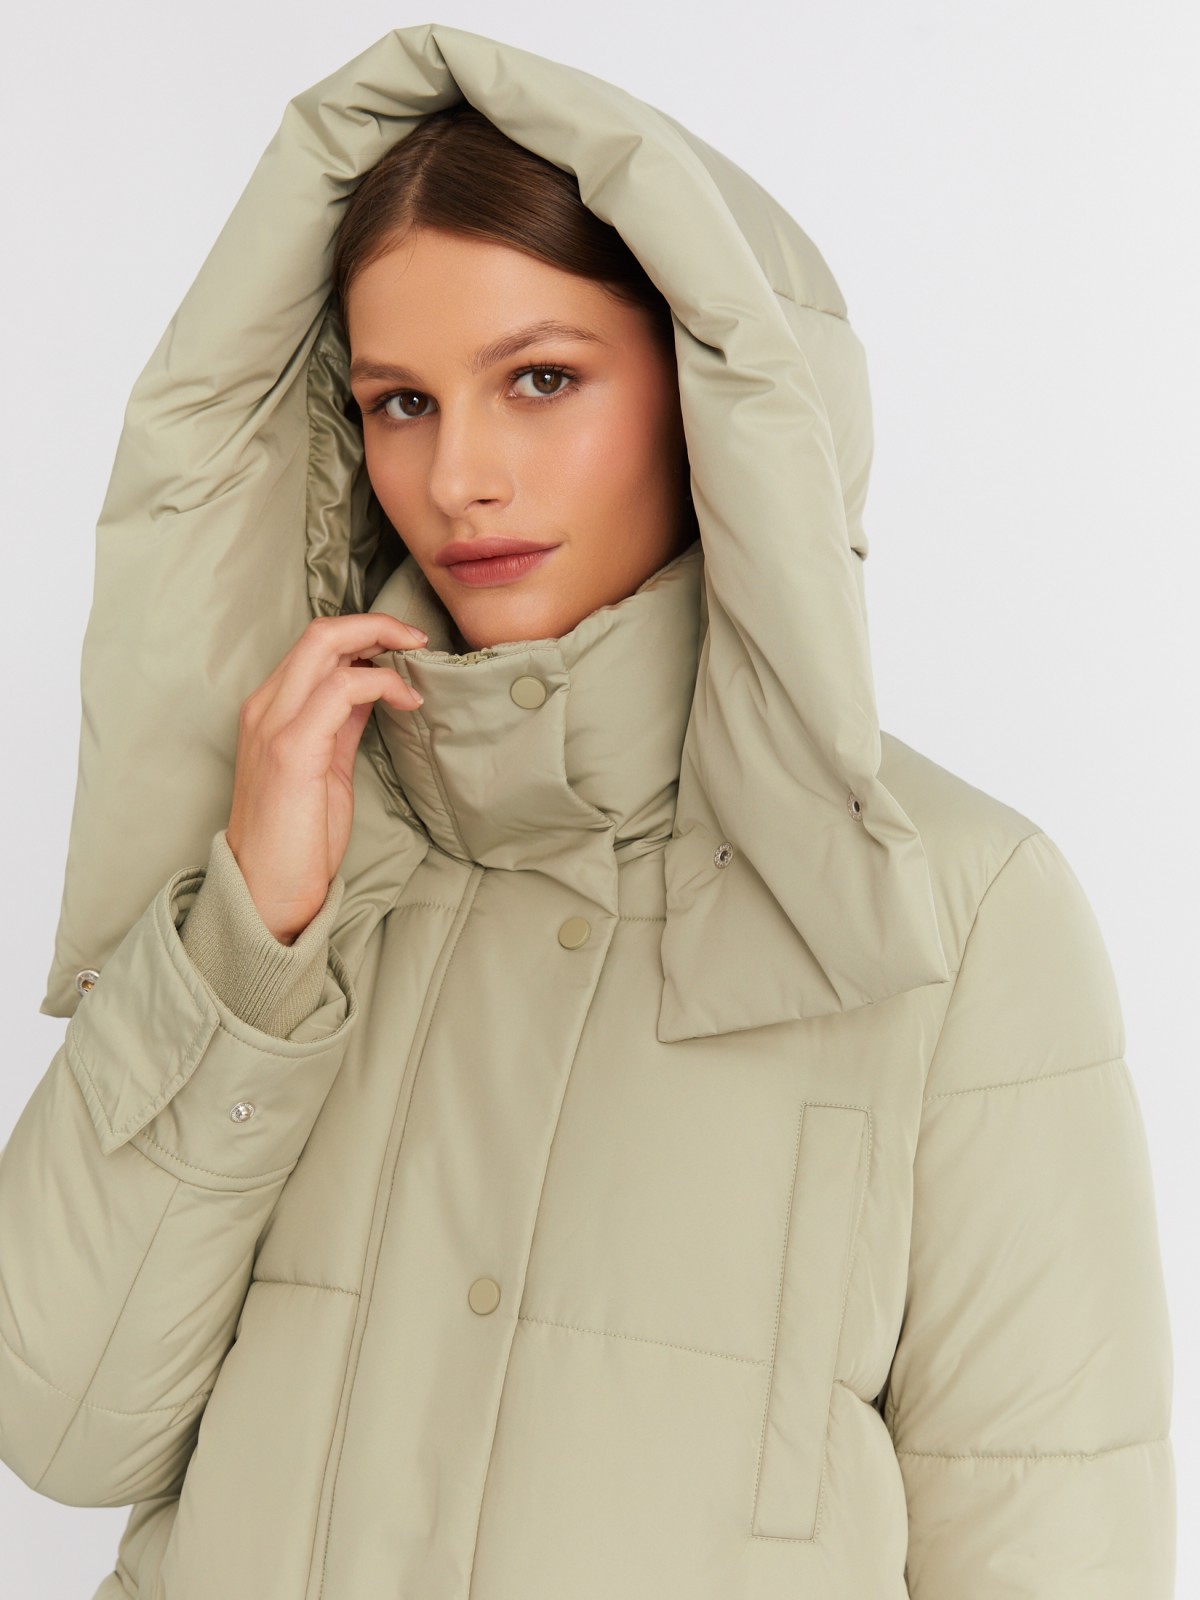 Тёплая куртка-пальто с капюшоном и боковыми шлицами zolla 022425212054, цвет хаки, размер XS - фото 4